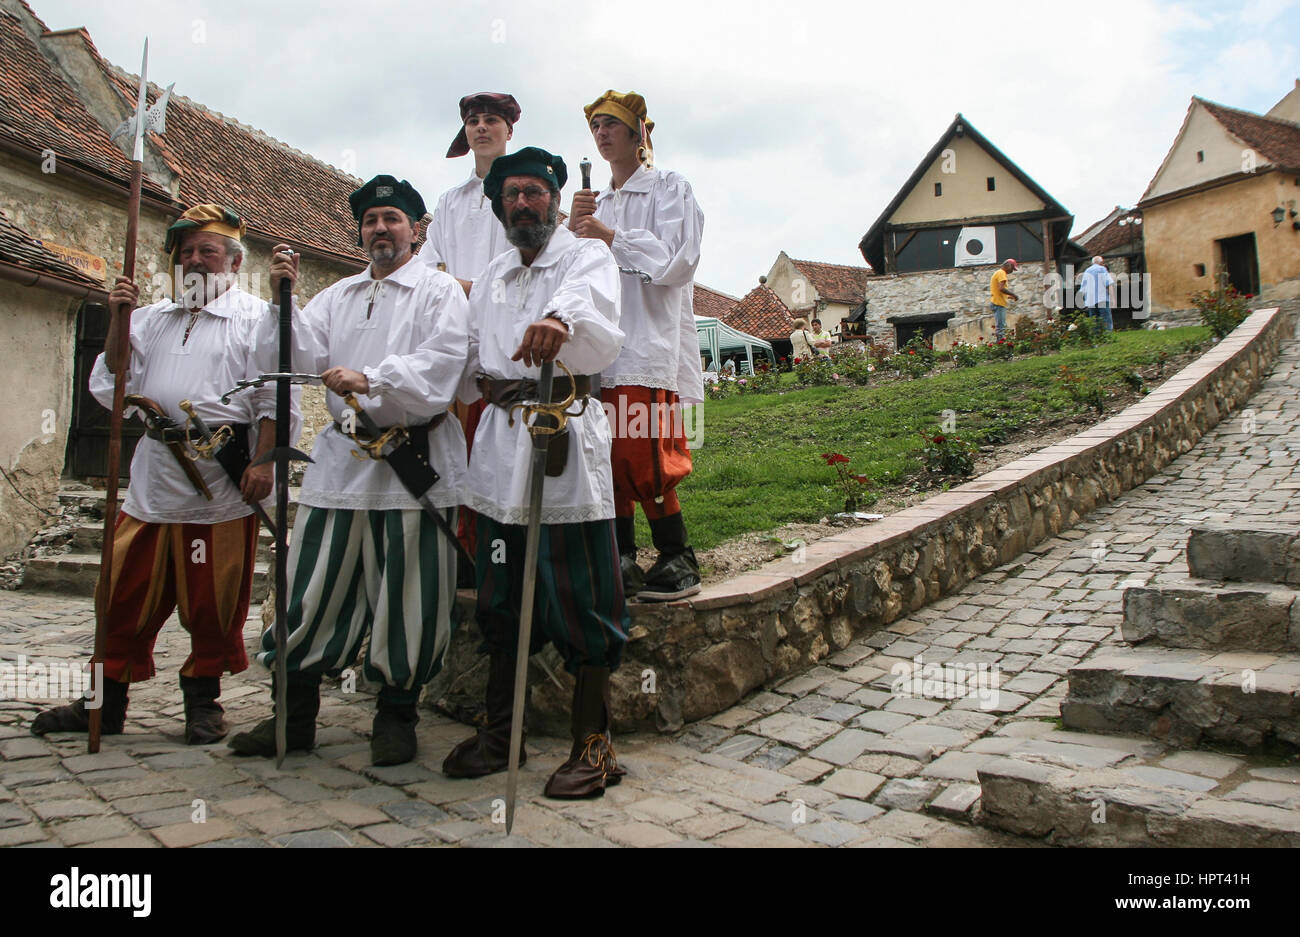 Rasnov, Rumania, 4 de julio de 2009: un grupo de guías vestidas en trajes medievales plantea en el interior de la fortaleza medieval de Rasnov, condado de Brasov, Rumania Foto de stock